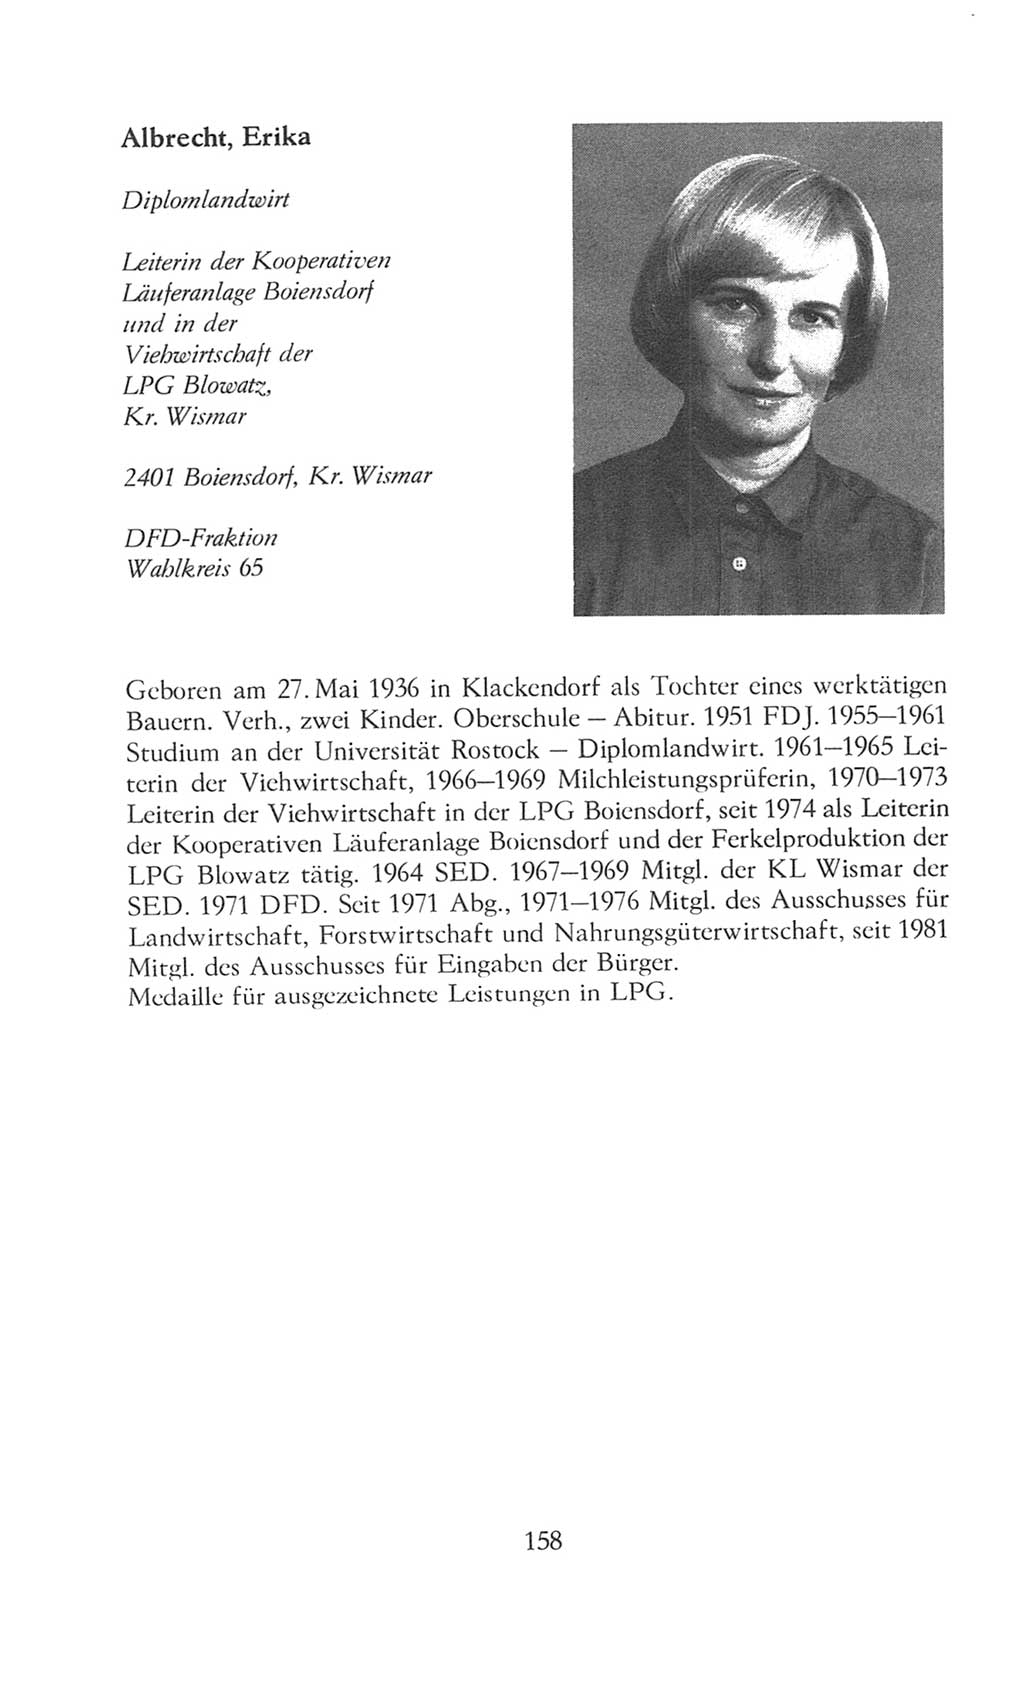 Volkskammer (VK) der Deutschen Demokratischen Republik (DDR), 8. Wahlperiode 1981-1986, Seite 158 (VK. DDR 8. WP. 1981-1986, S. 158)